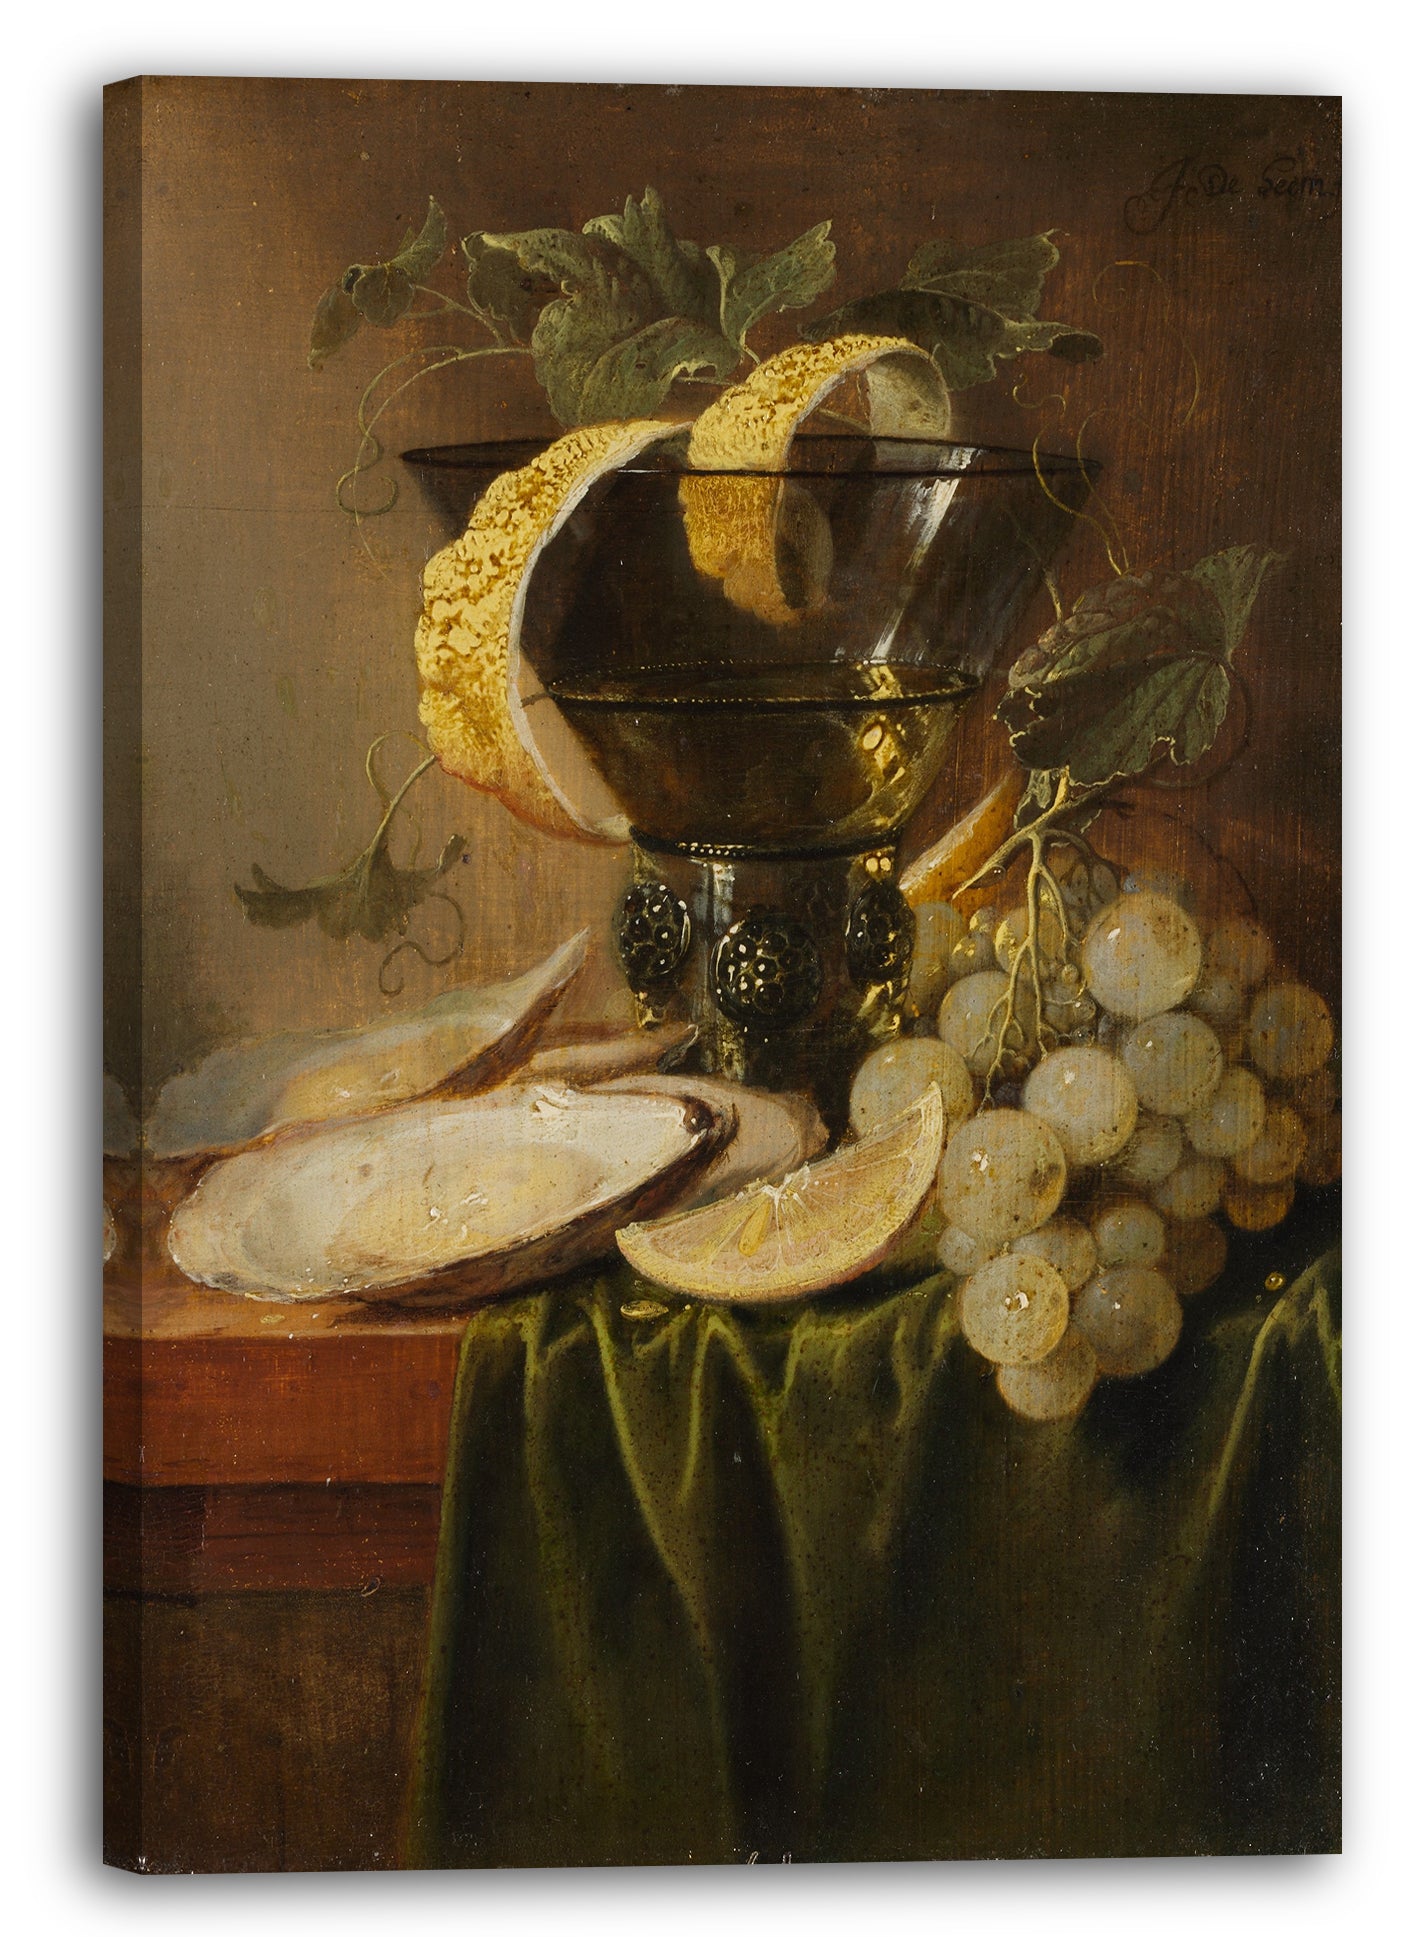 Leinwandbild Jan Davidsz de Heem - Stillleben mit einem Glas und Austern